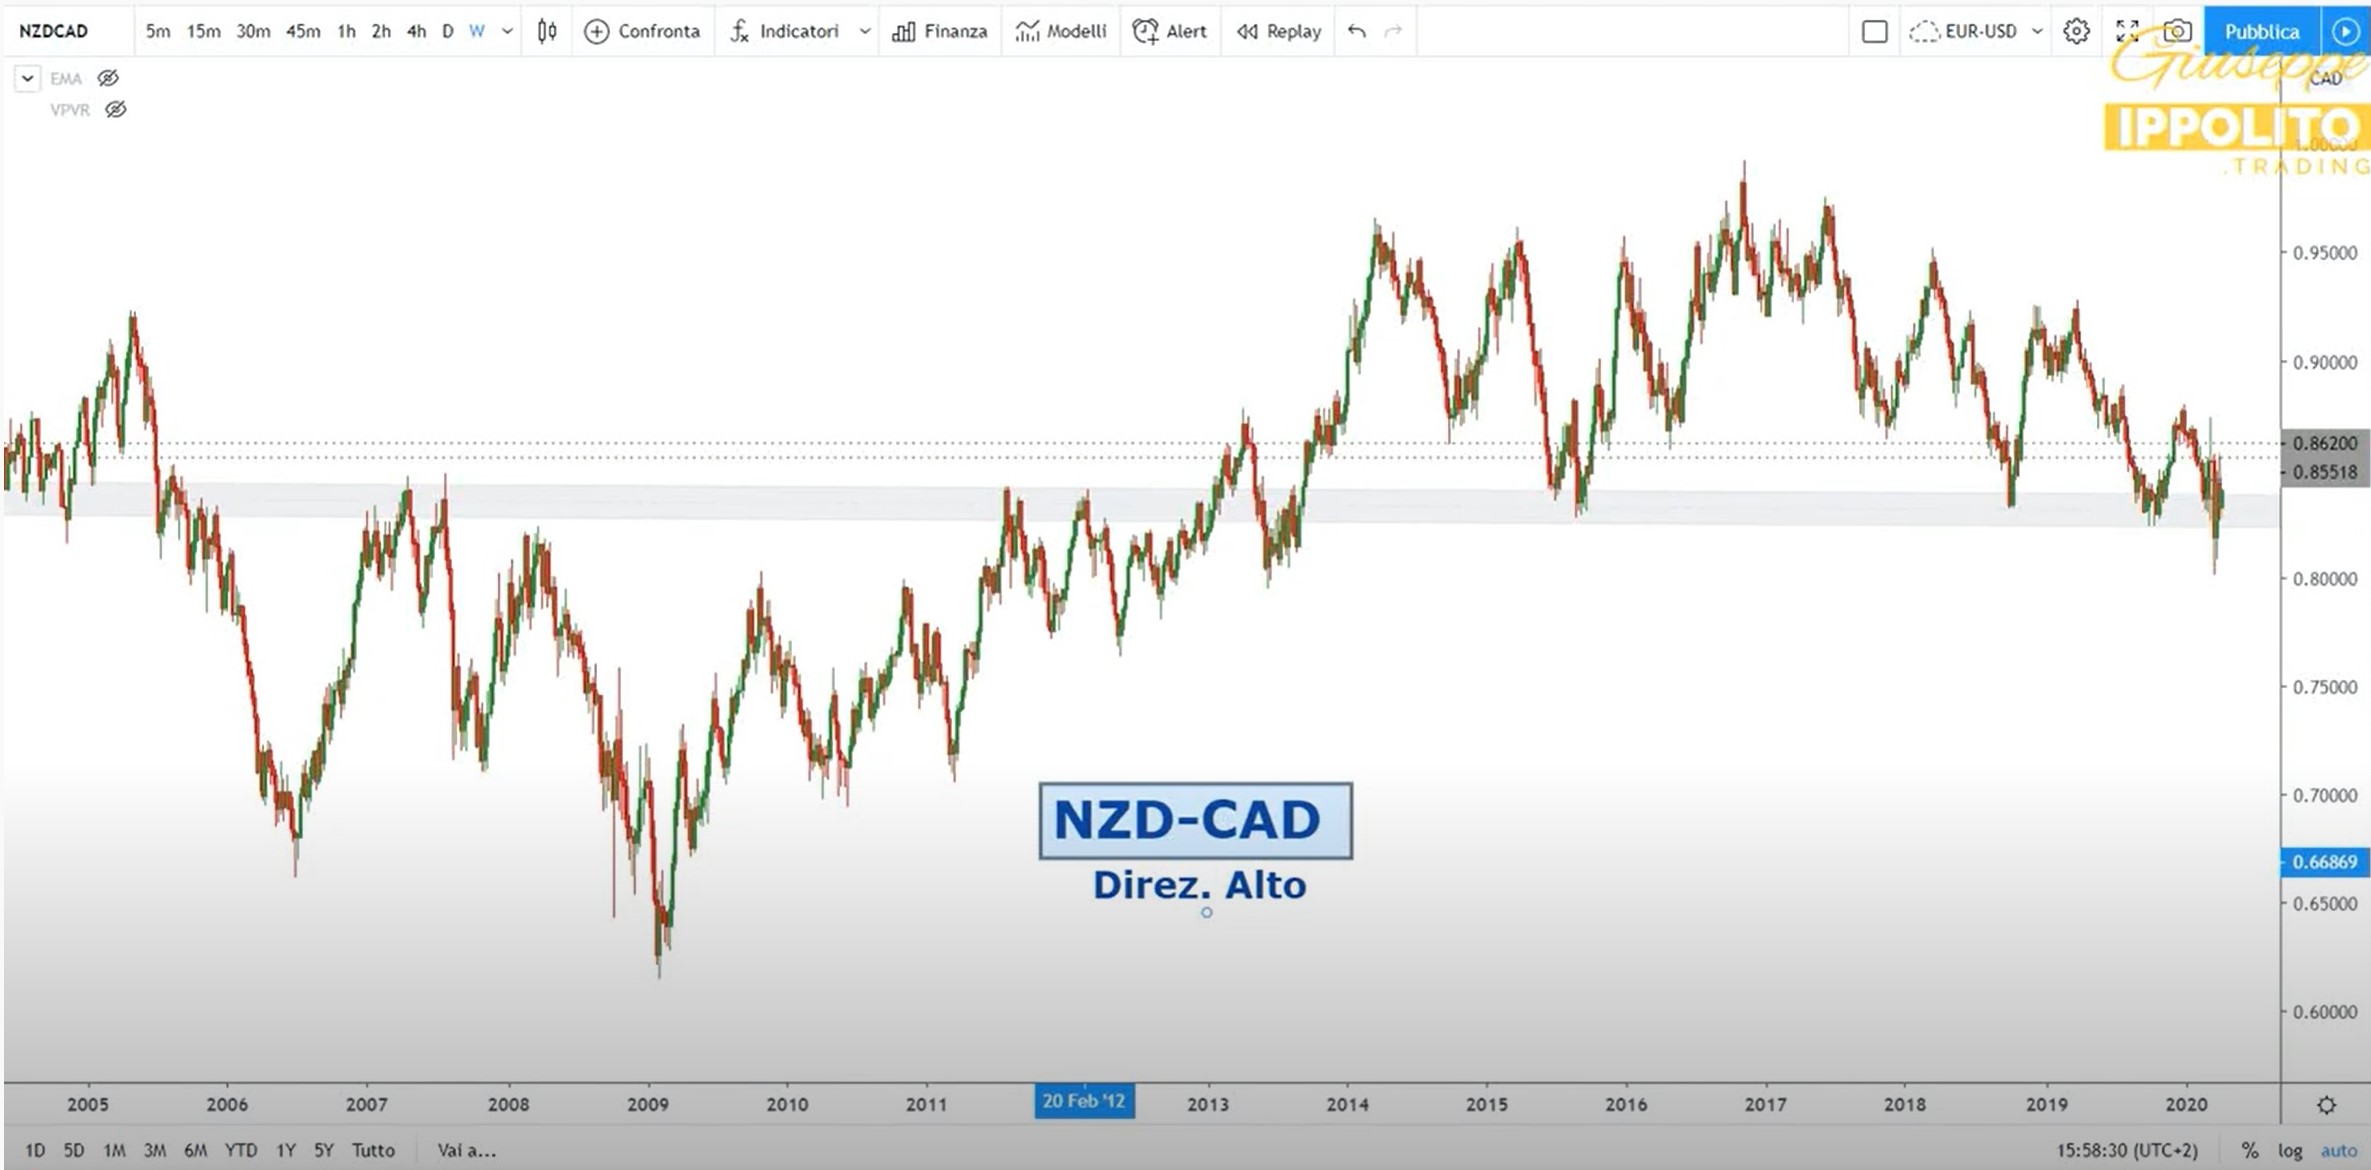 Analisi opportunità NZD-CAD del 06-04-2020